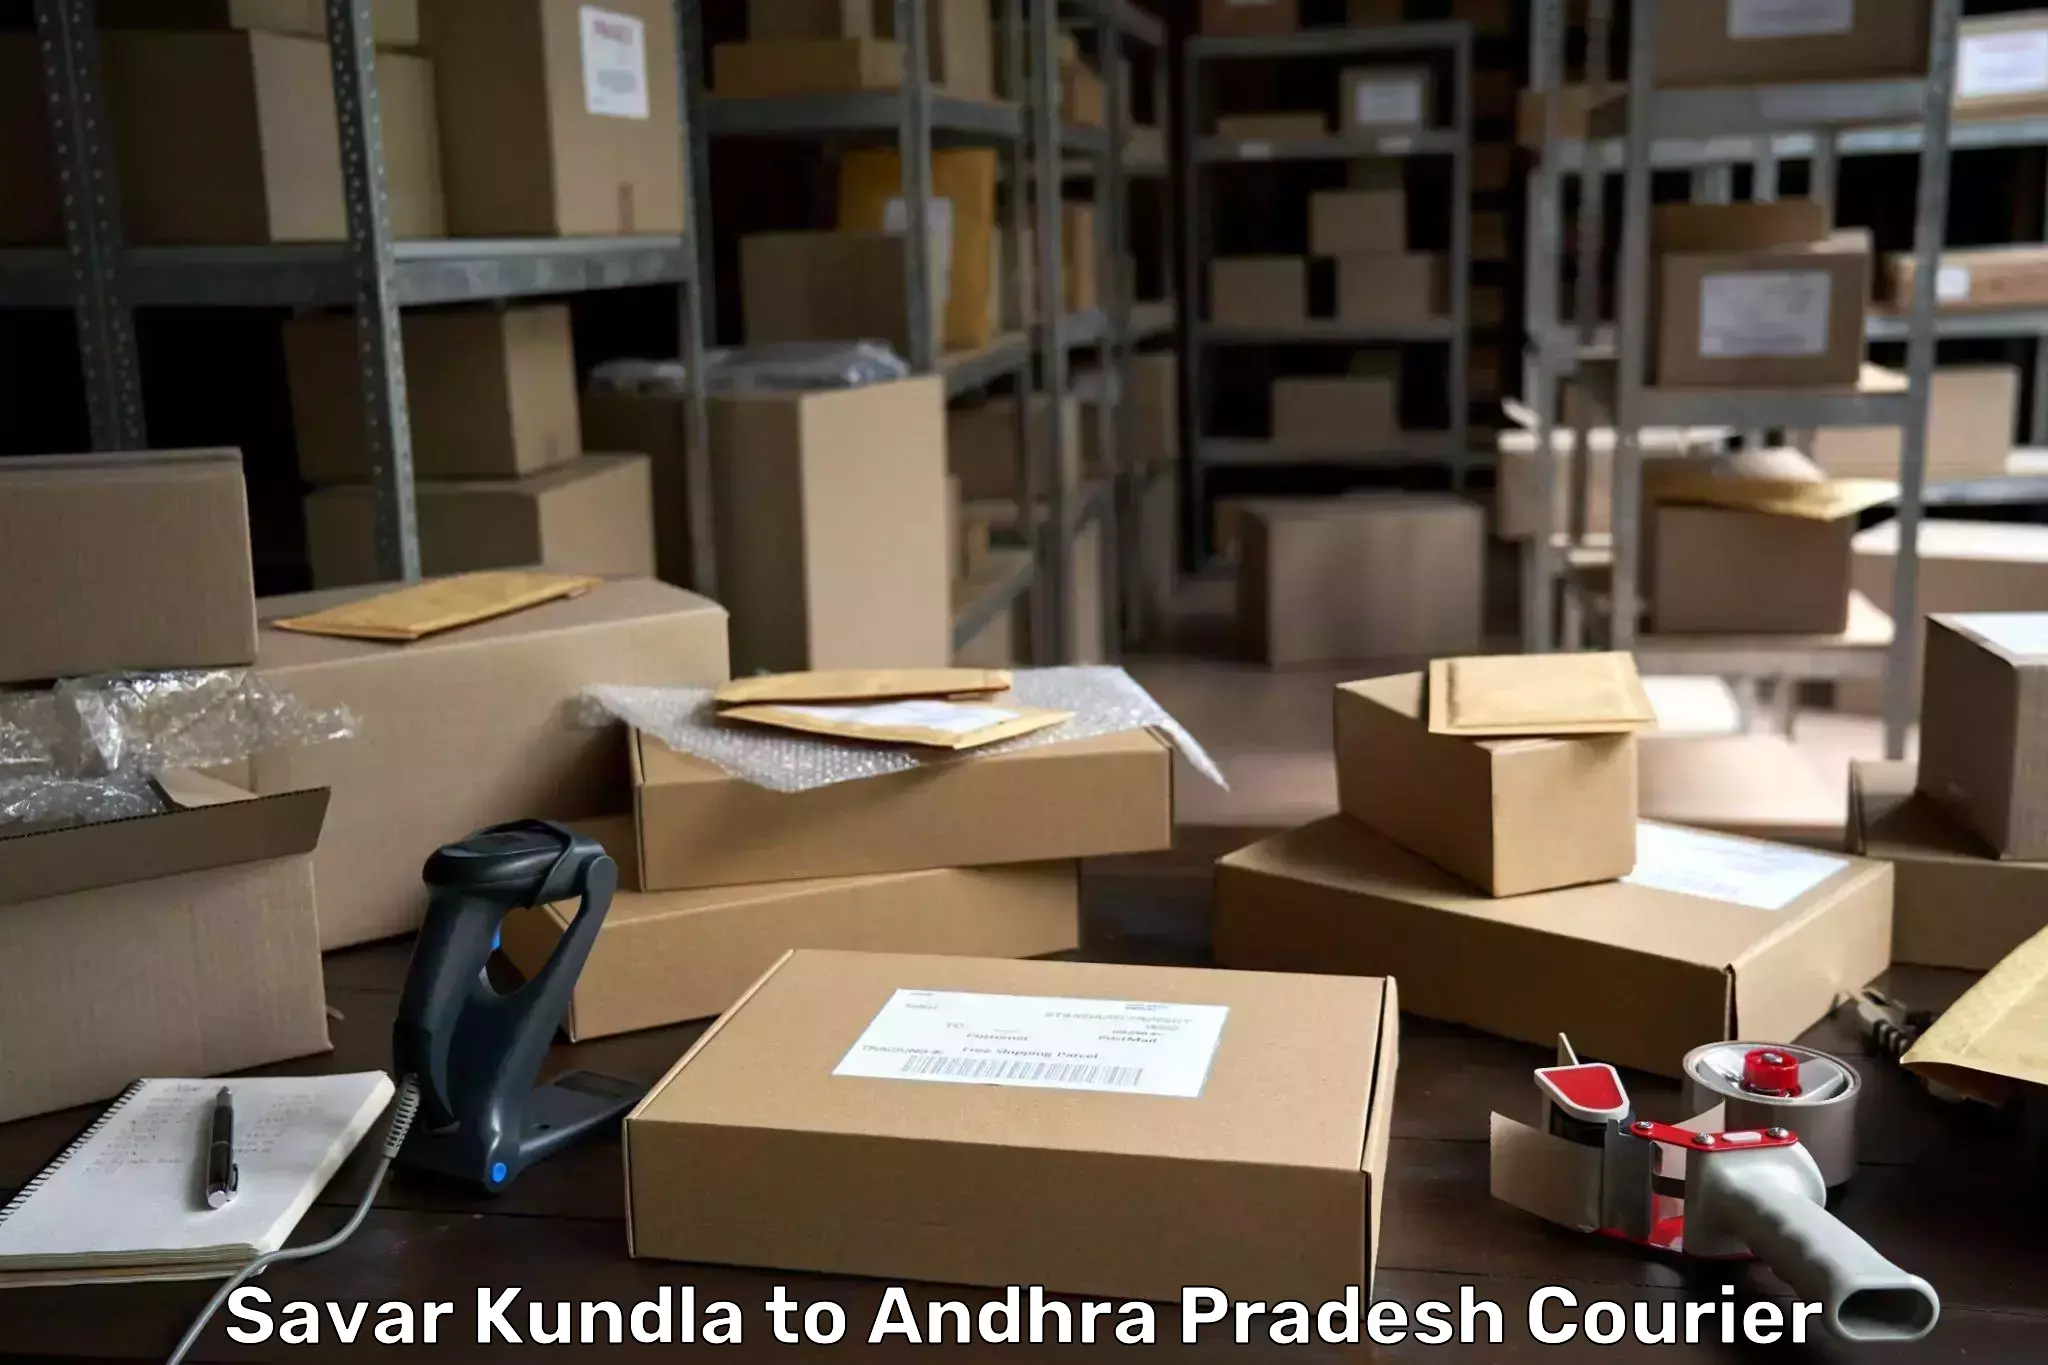 Large package courier Savar Kundla to Chintalapudi